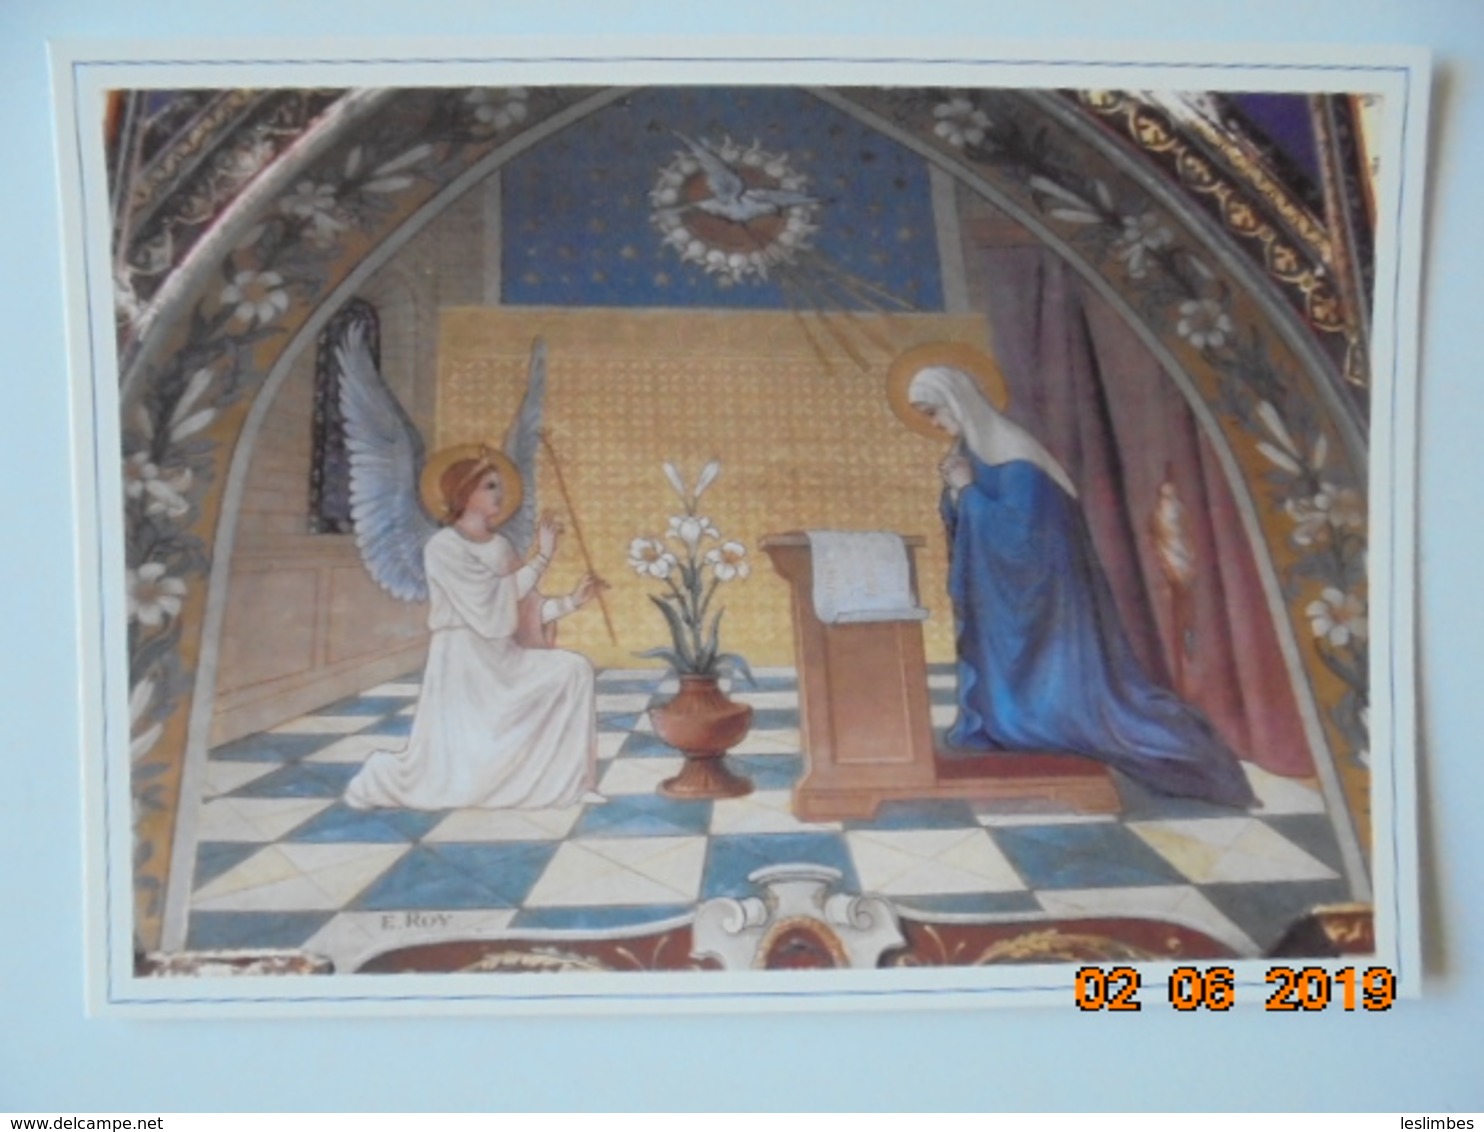 Paroisse Ste Marie Des Olonnes. Eglise Notre Dame De Bon Port. Fresque De L'Annonciation. E. Roy, 1913. Chapelle - Peintures & Tableaux